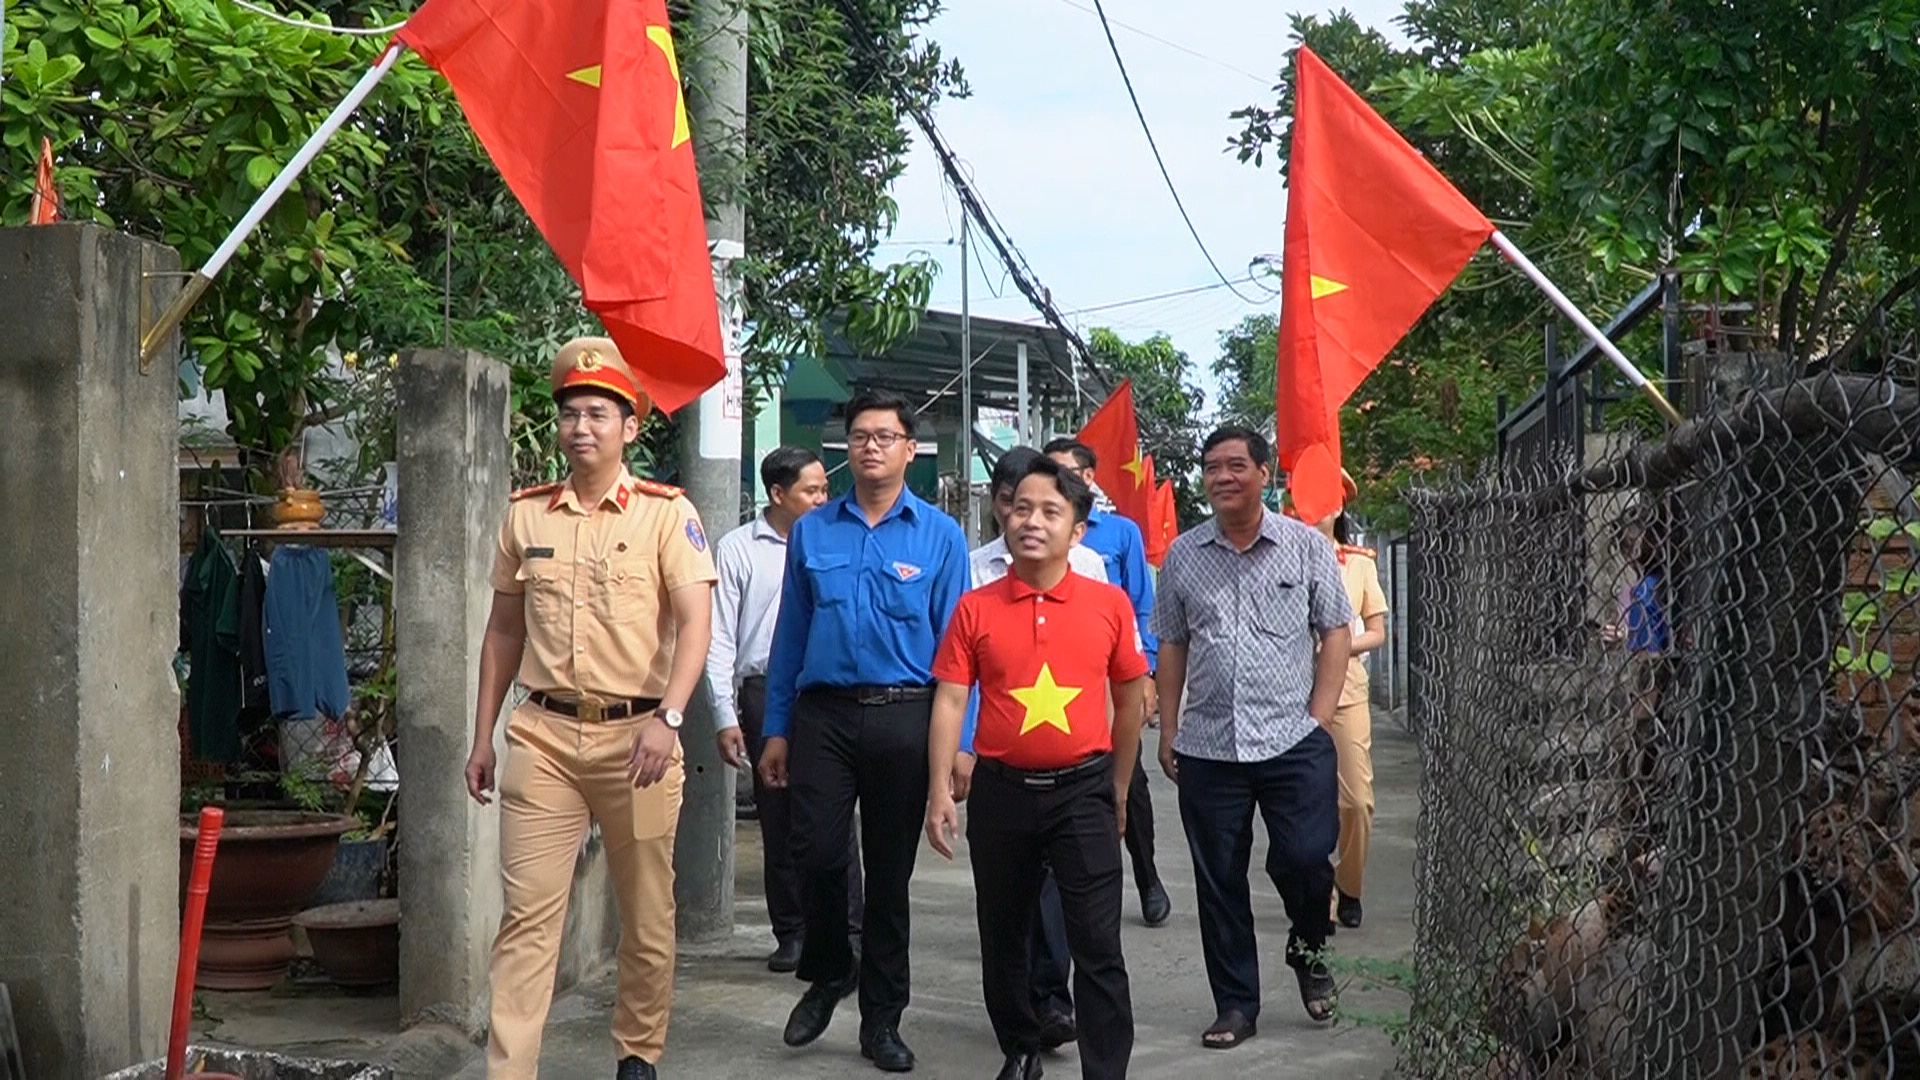 Ấn tượng “Đường cờ Tổ quốc” ở xã Bình Khánh, huyện Cần Giờ - Ảnh 1.